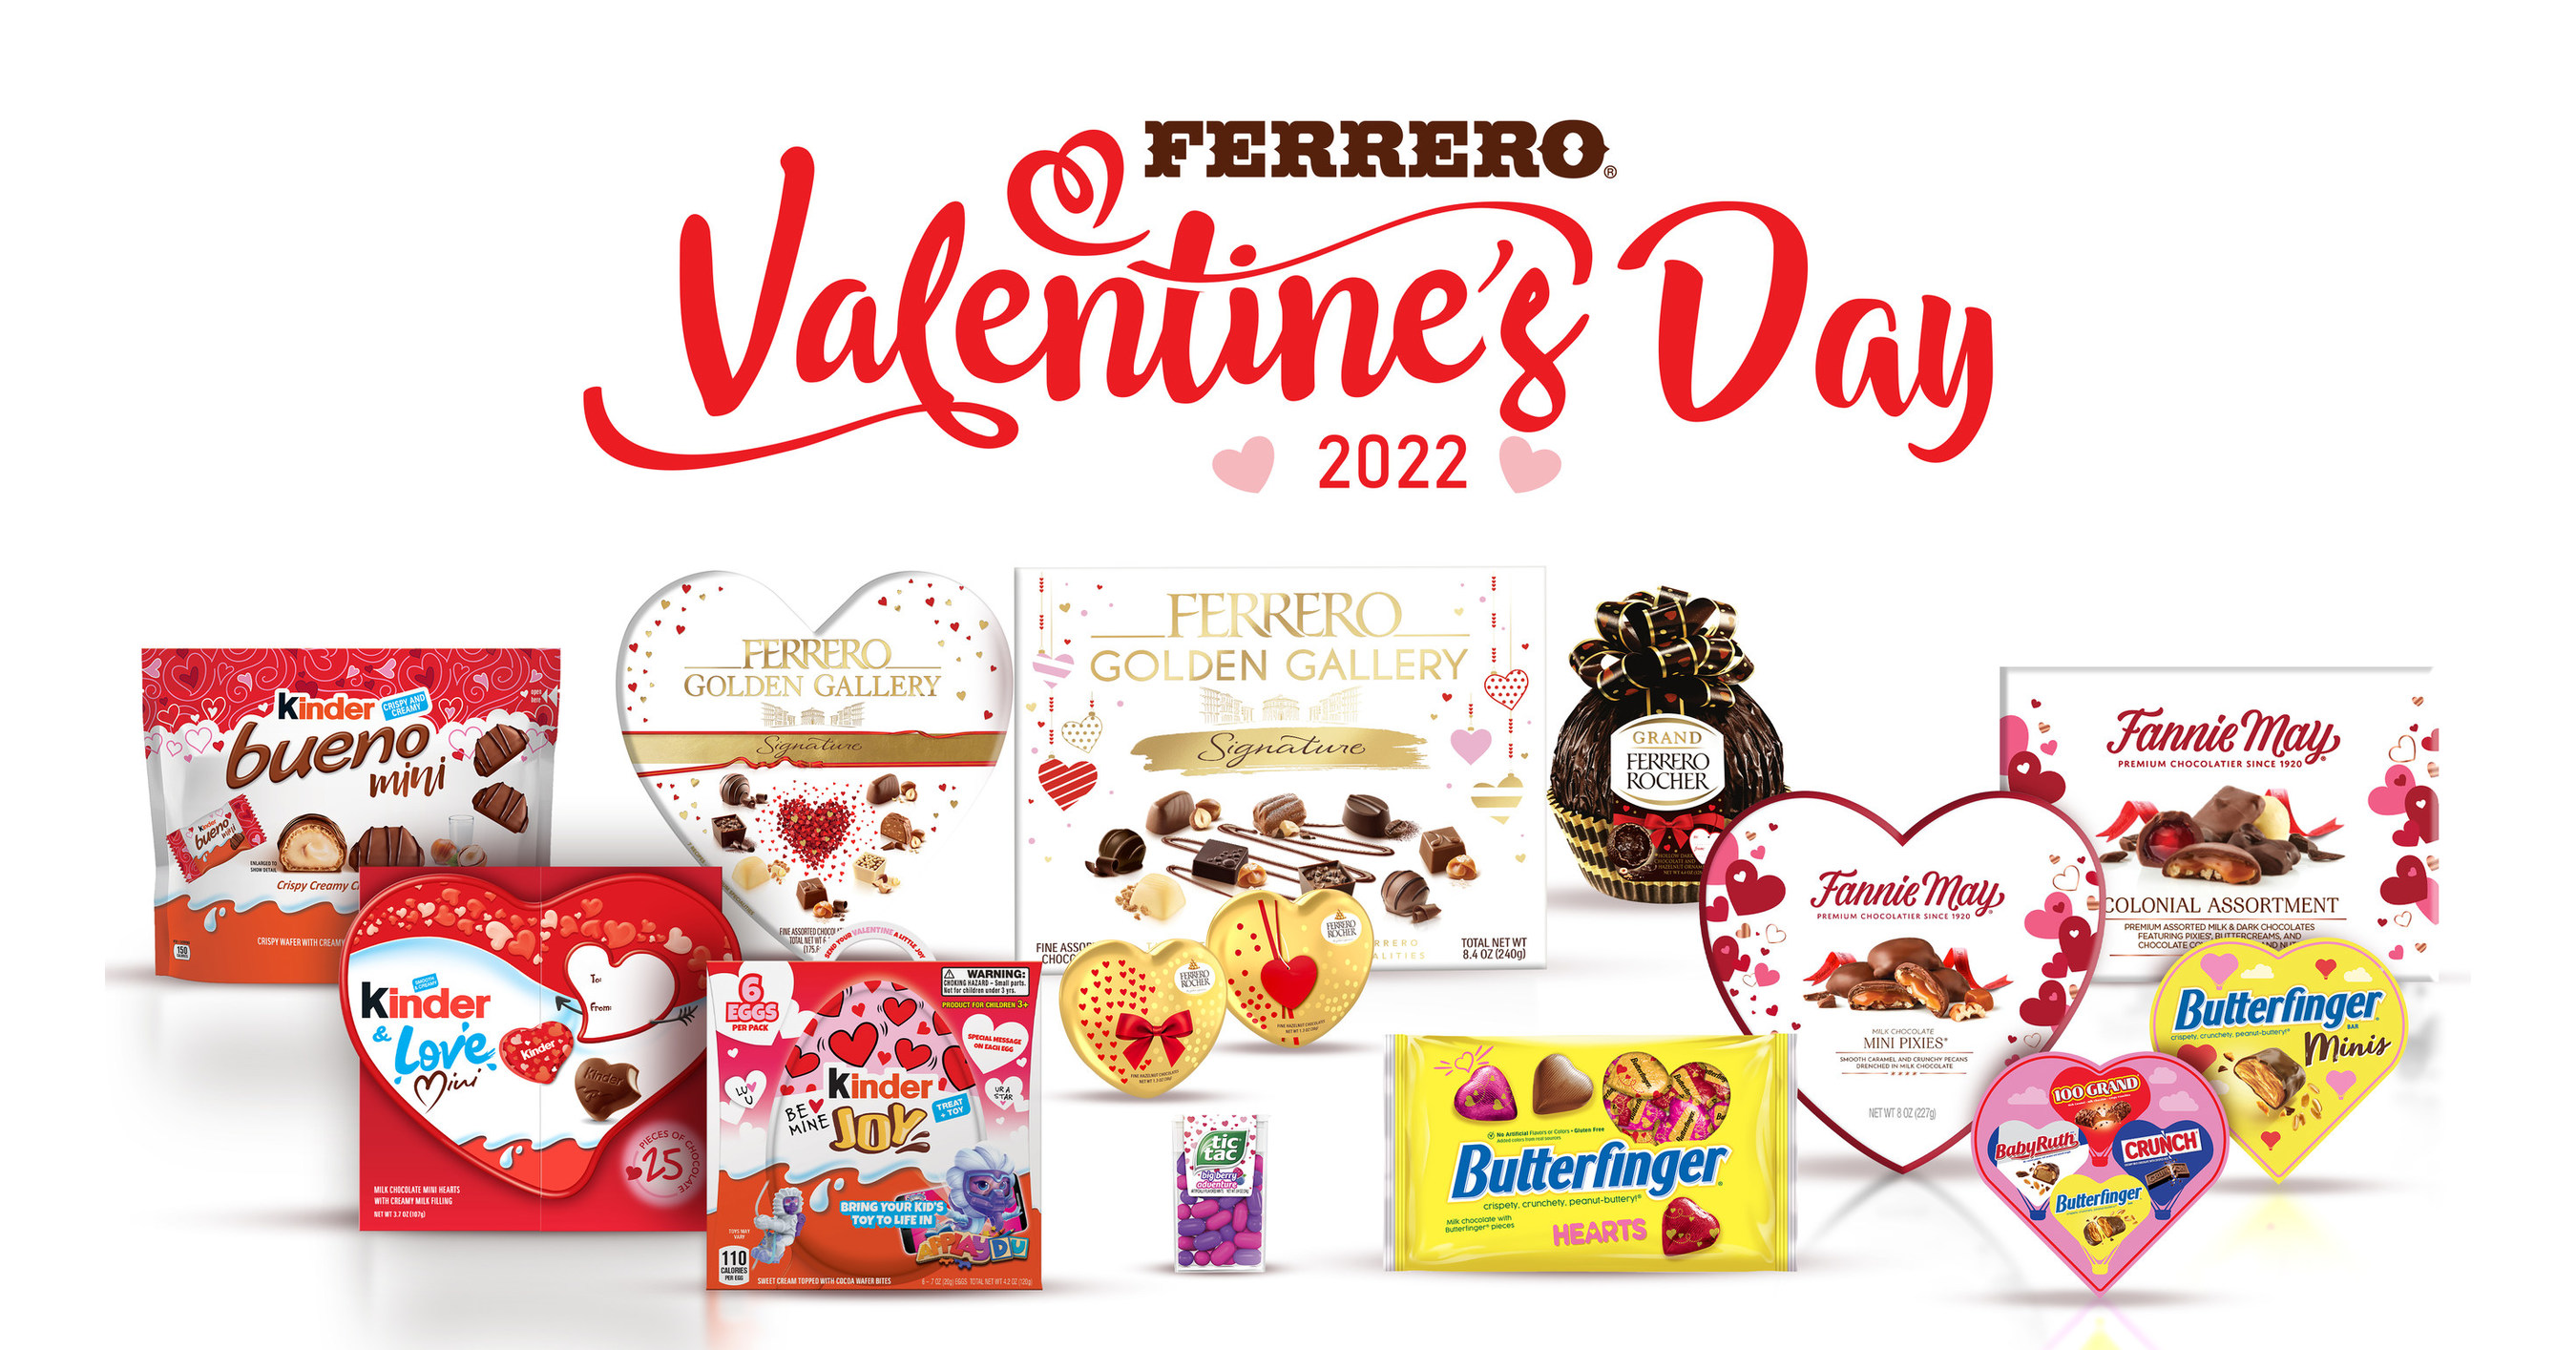 Kinder Bueno, Chocolate Bars, Valentine's Day Gift (20 pk